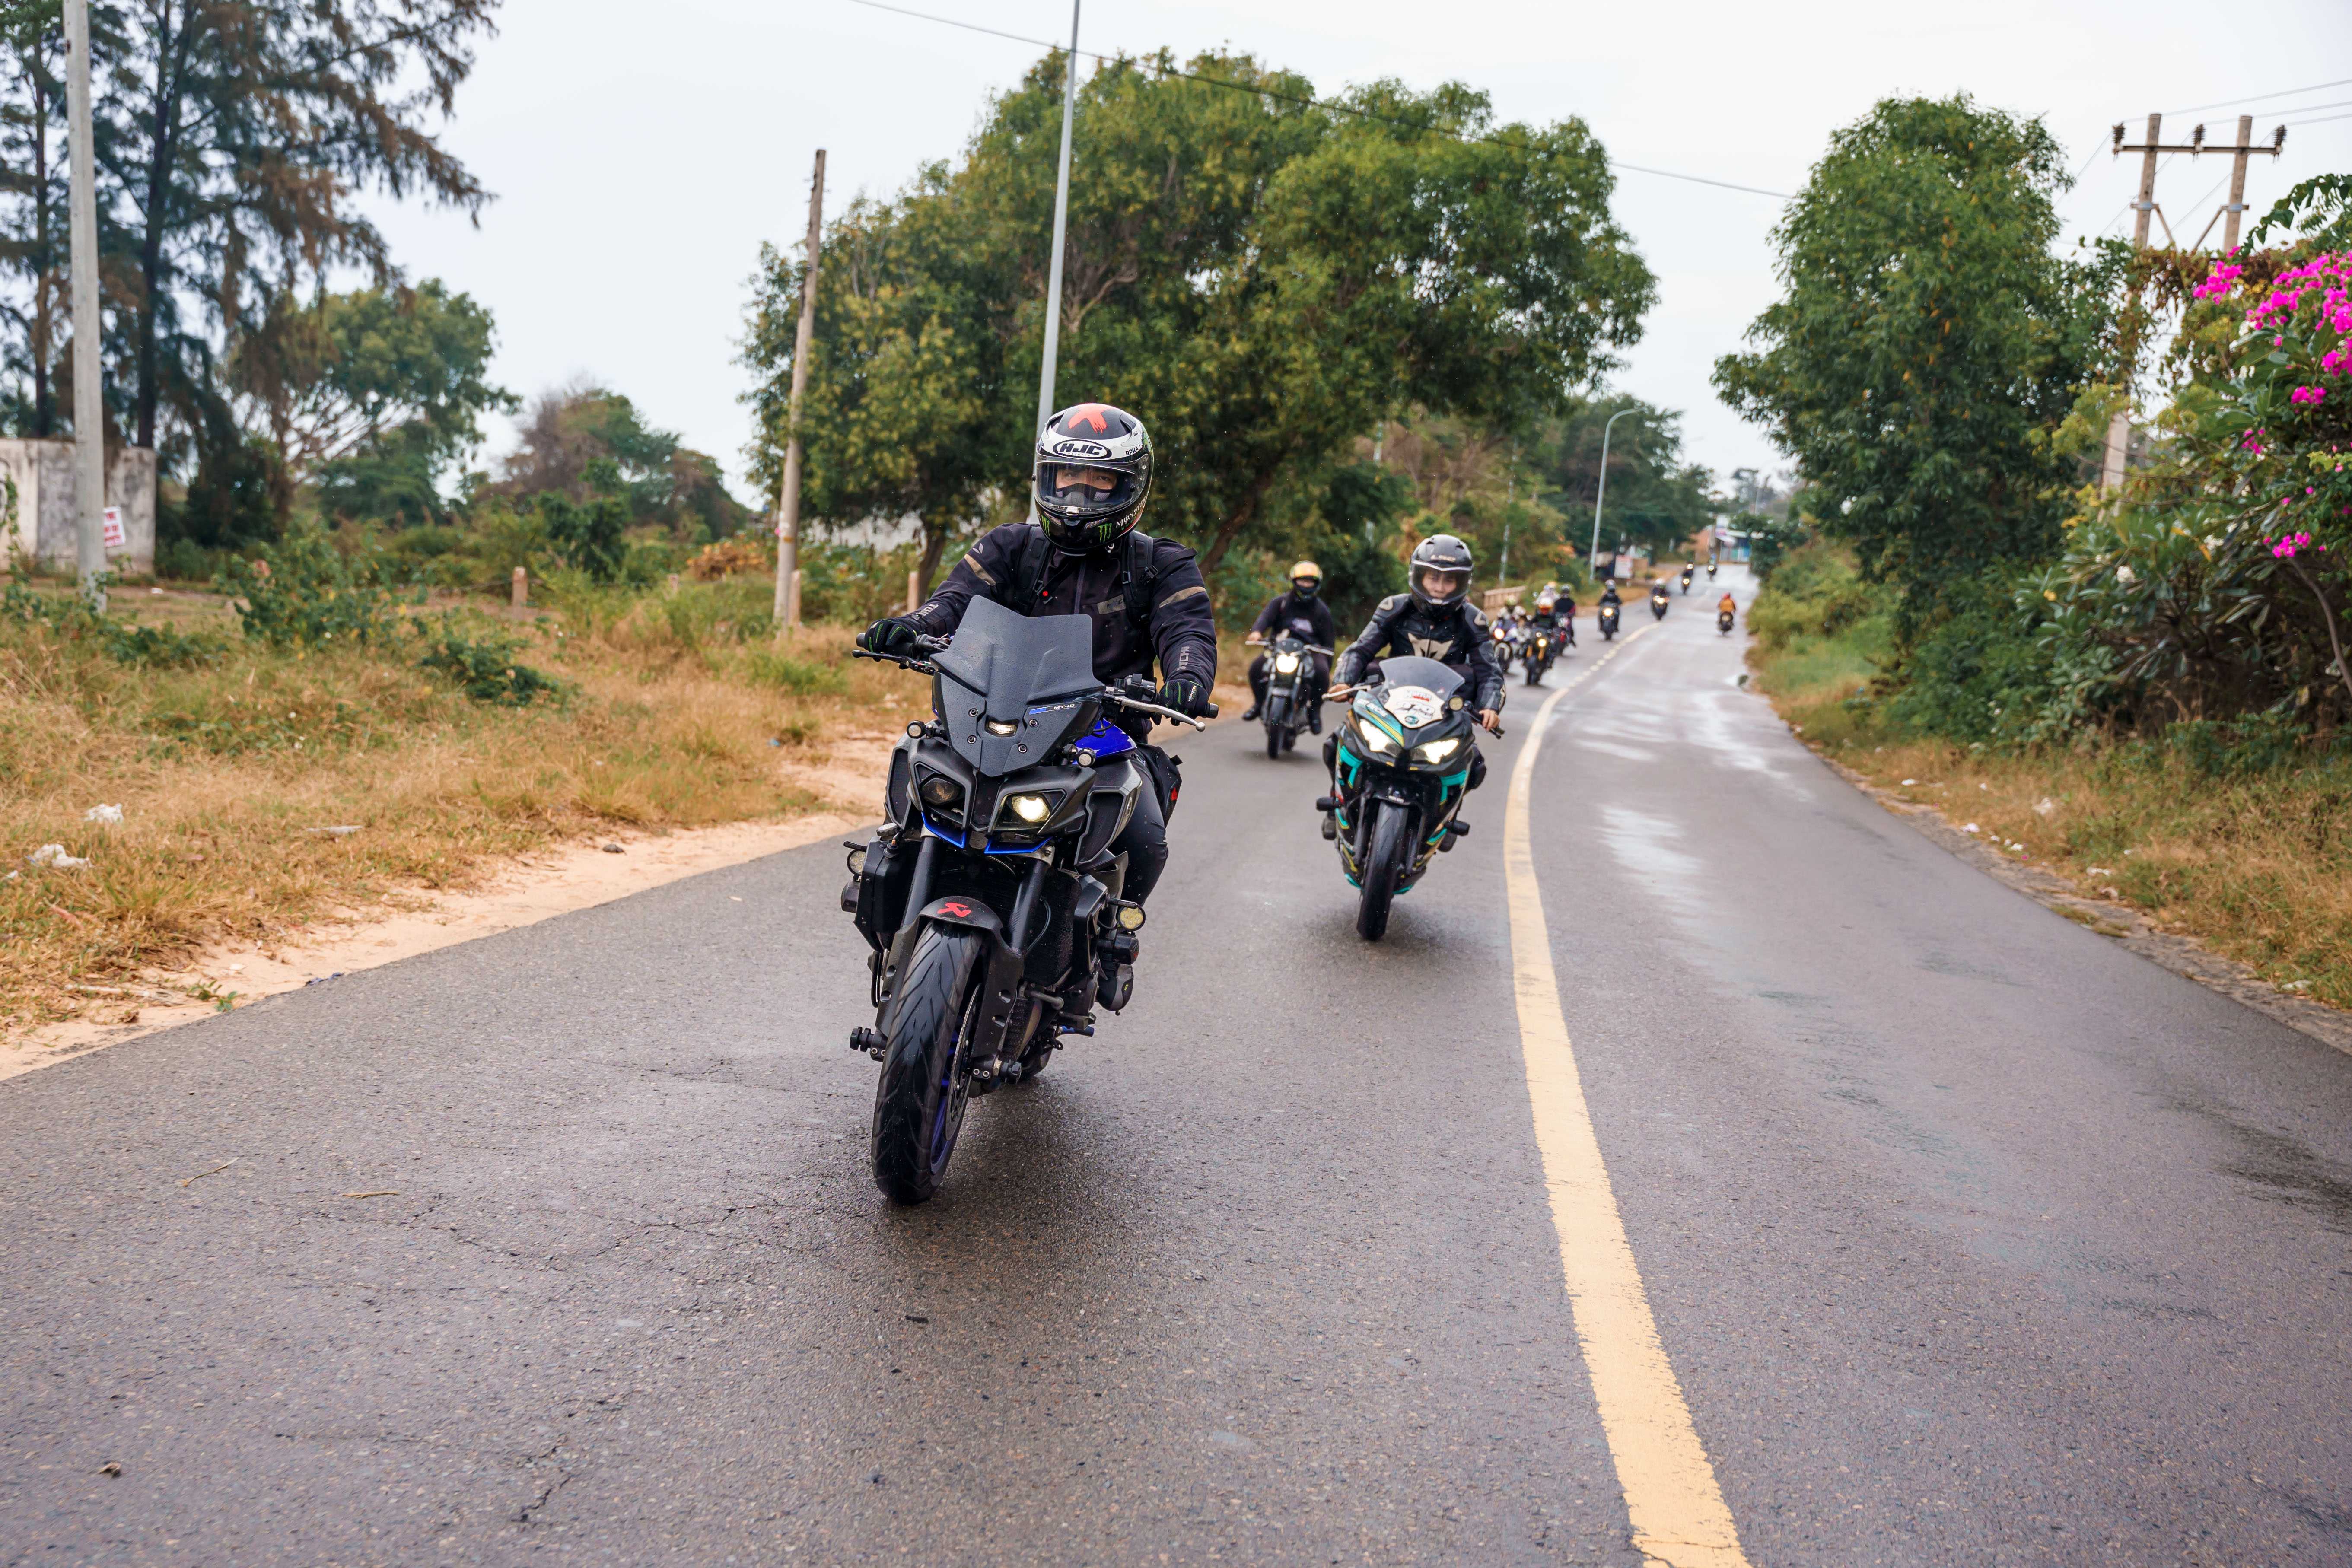 Revzone Phan Thiet Ride: Toàn cảnh hành trình 500km hội ngộ tại Phan Thiết Revzone Phan Thiet Ride (20).jpg